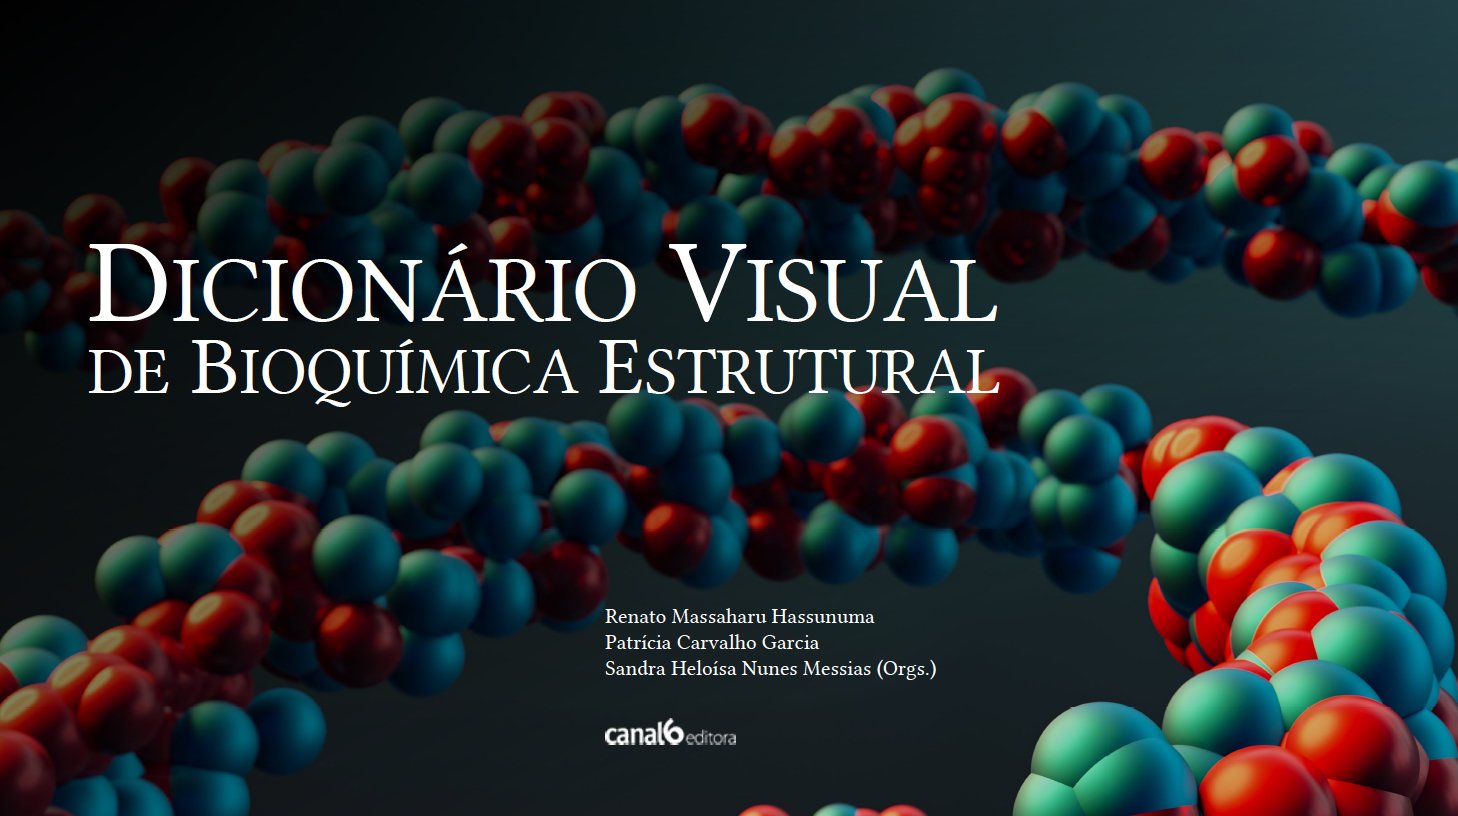 Dicionário visual de Bioquímica Estrutural